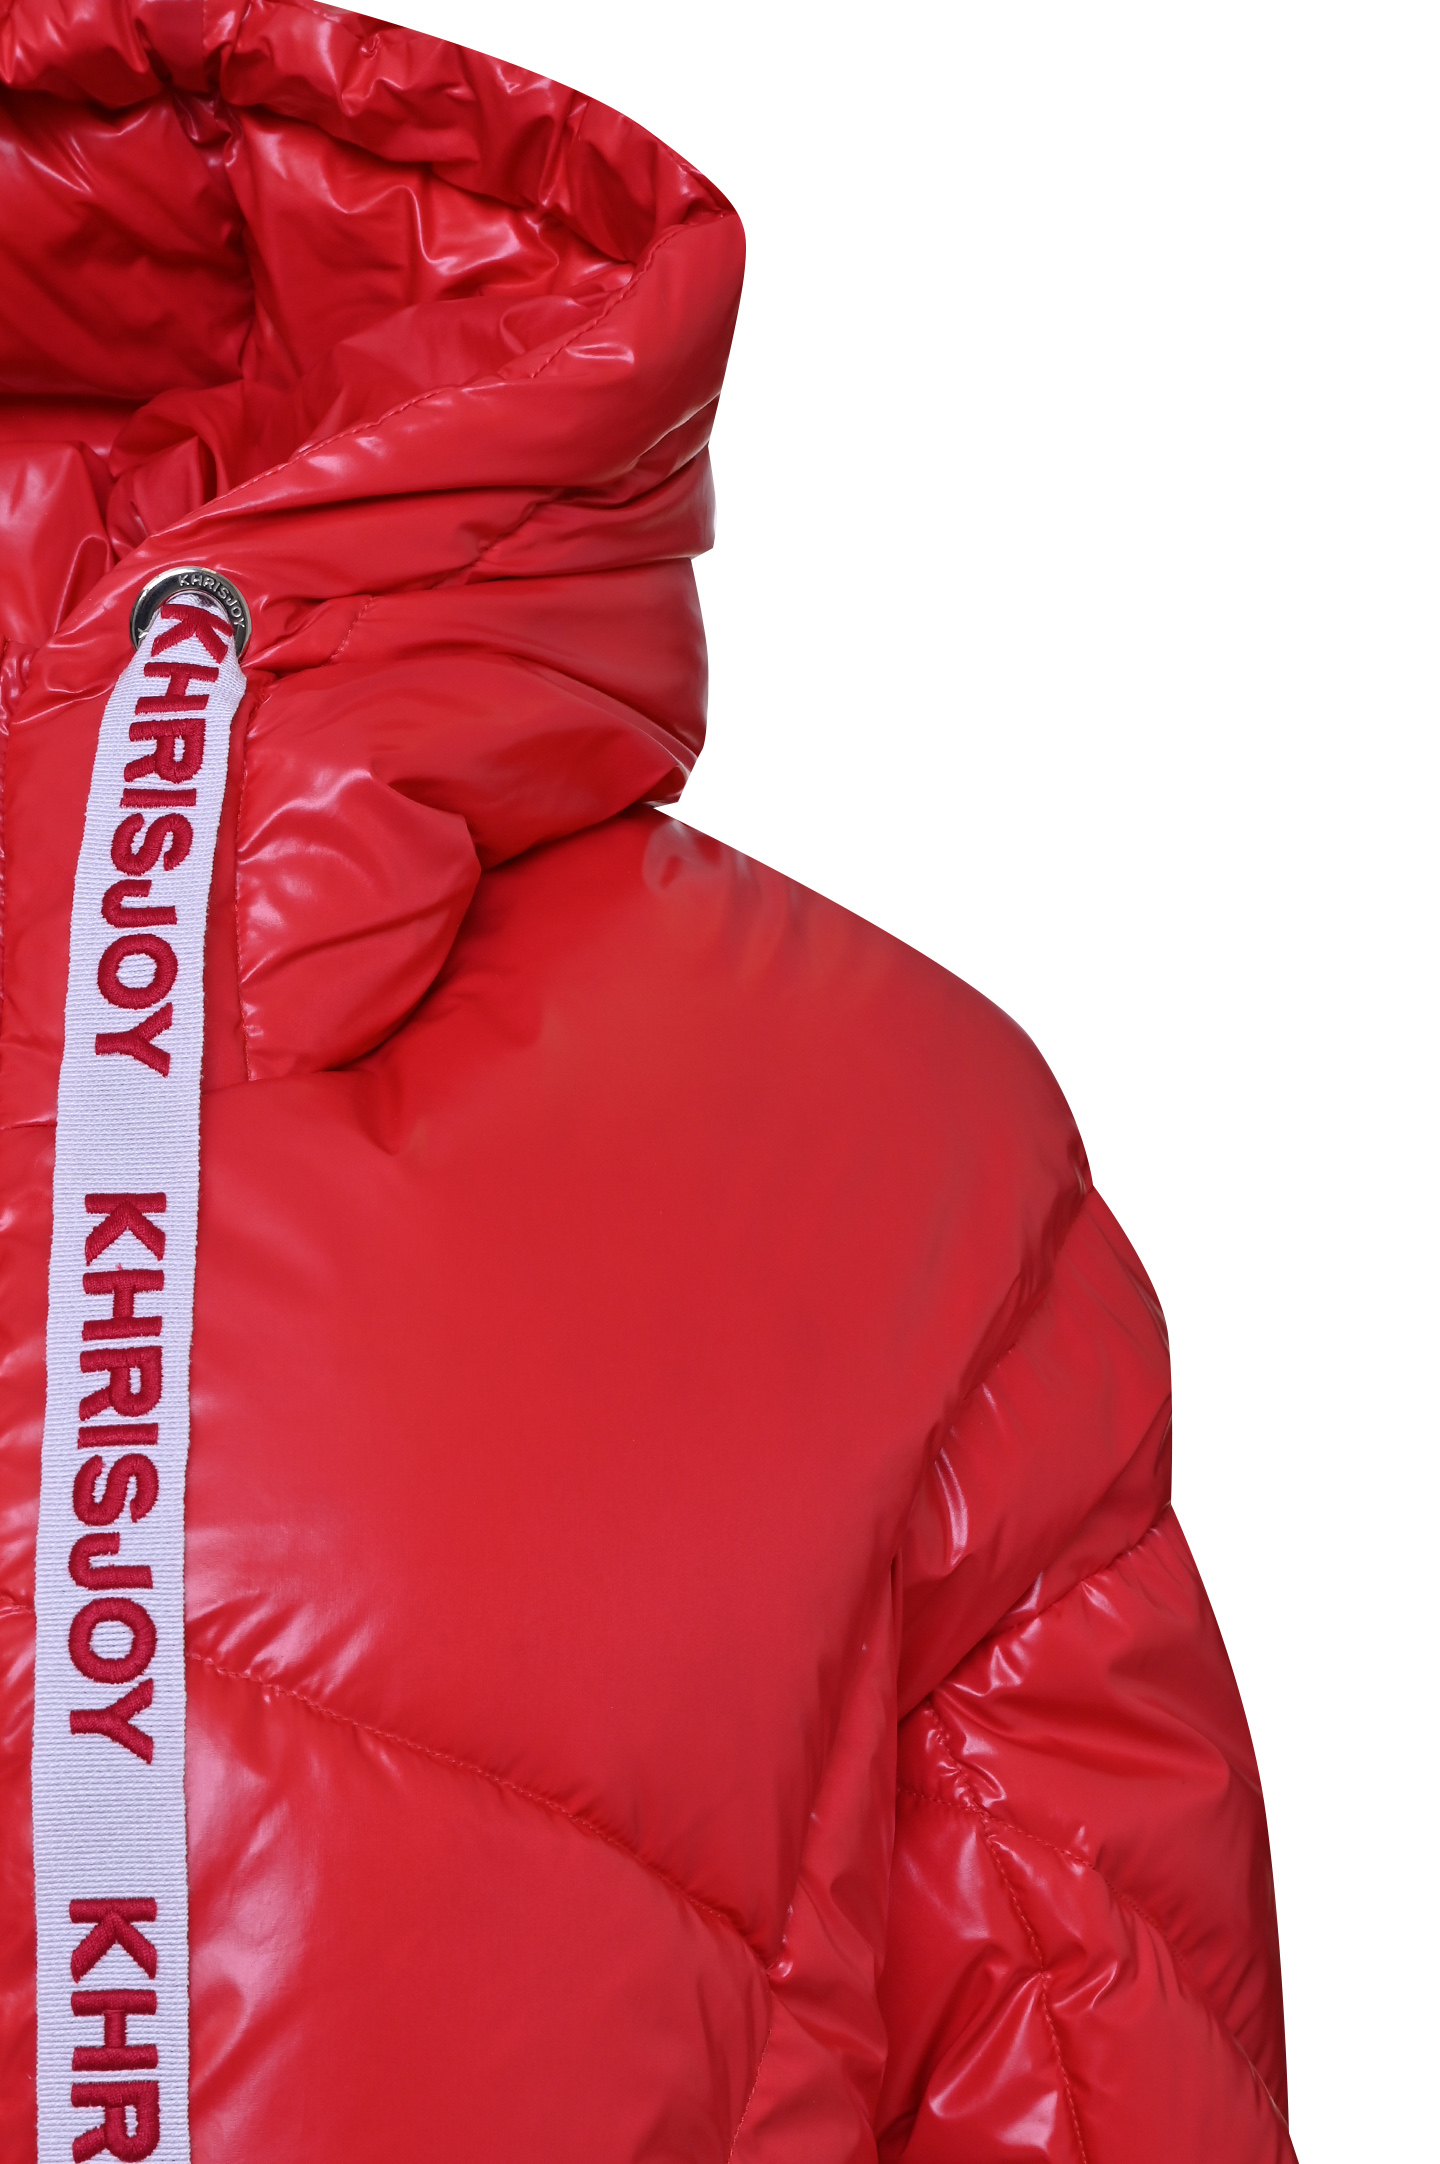 Куртка KHRISJOY AFPW001 NYL, цвет: Красный, Женский